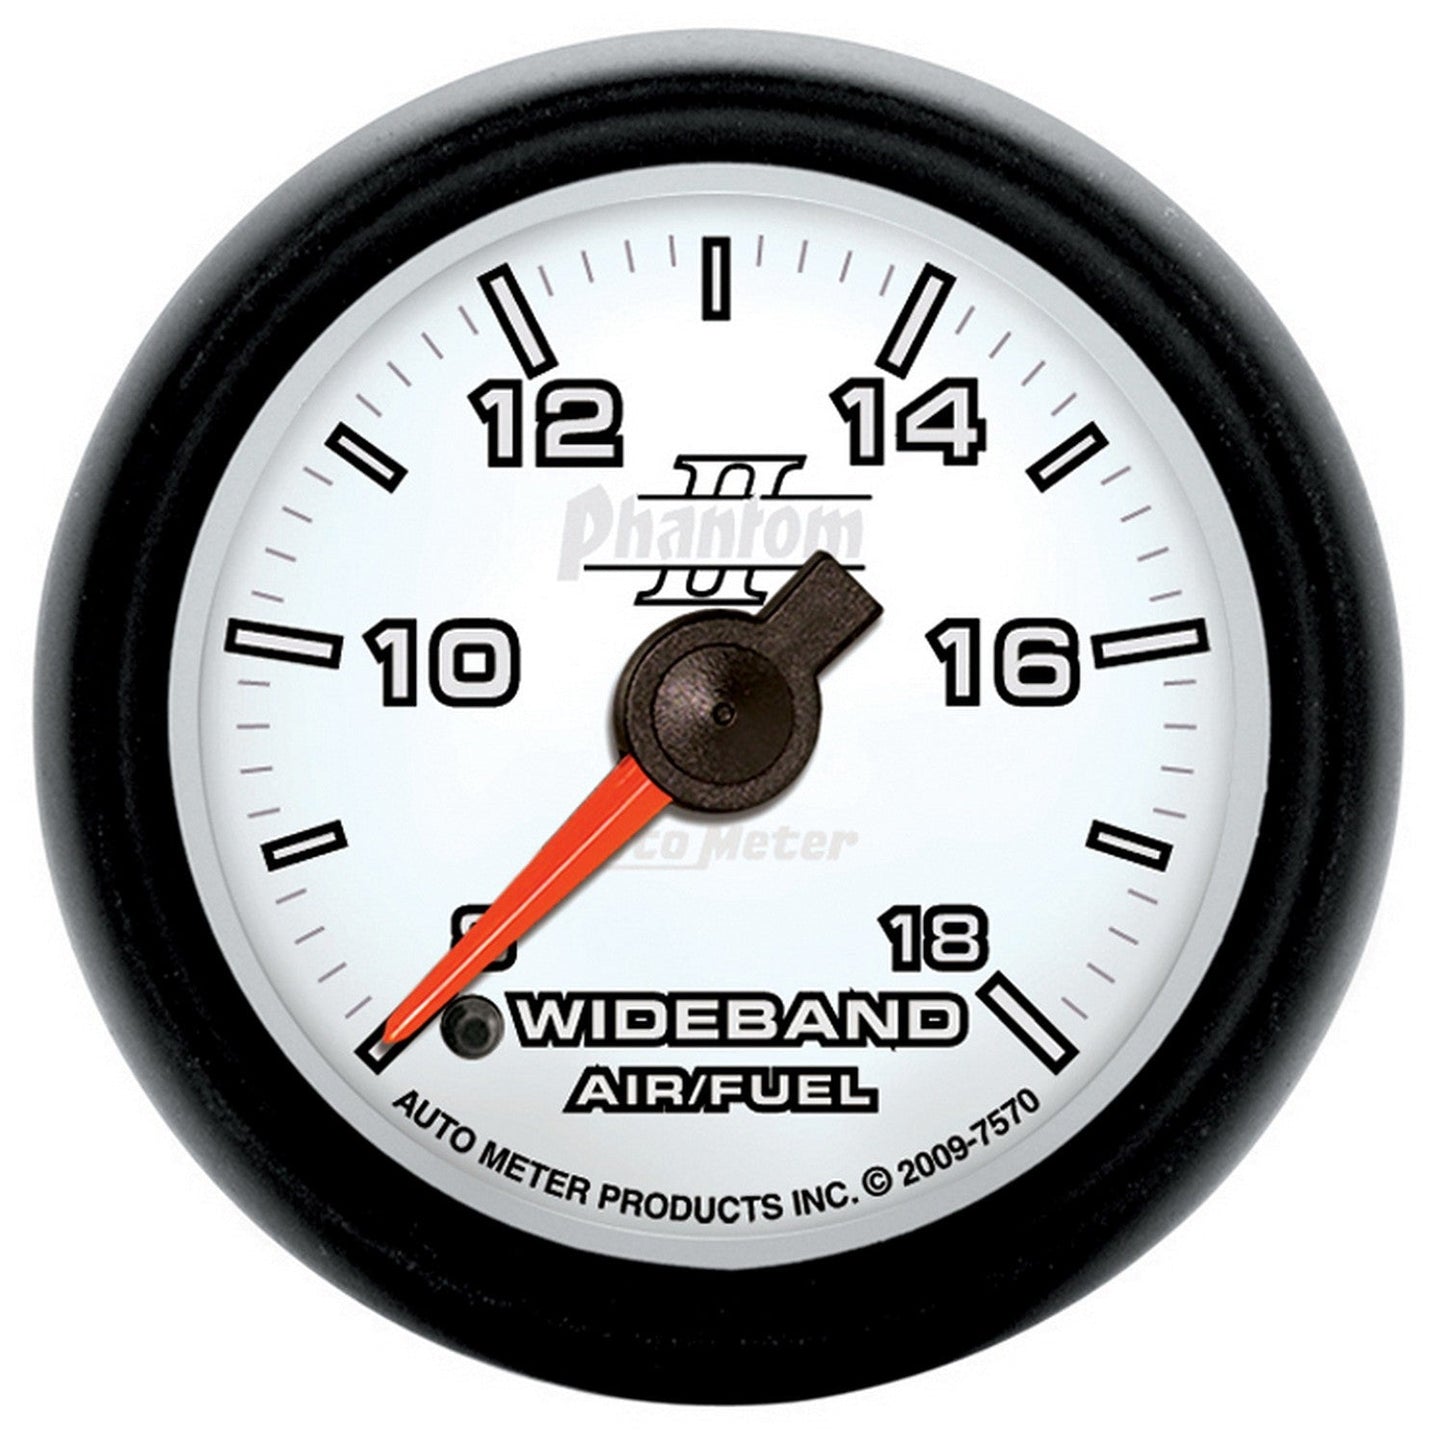 AutoMeter - RELACIÓN DE AIRE/COMBUSTIBLE DE BANDA ANCHA DE 2-1/16", ANALÓGICO, 8:1-18:1 AFR, PHANTOM II (7570)